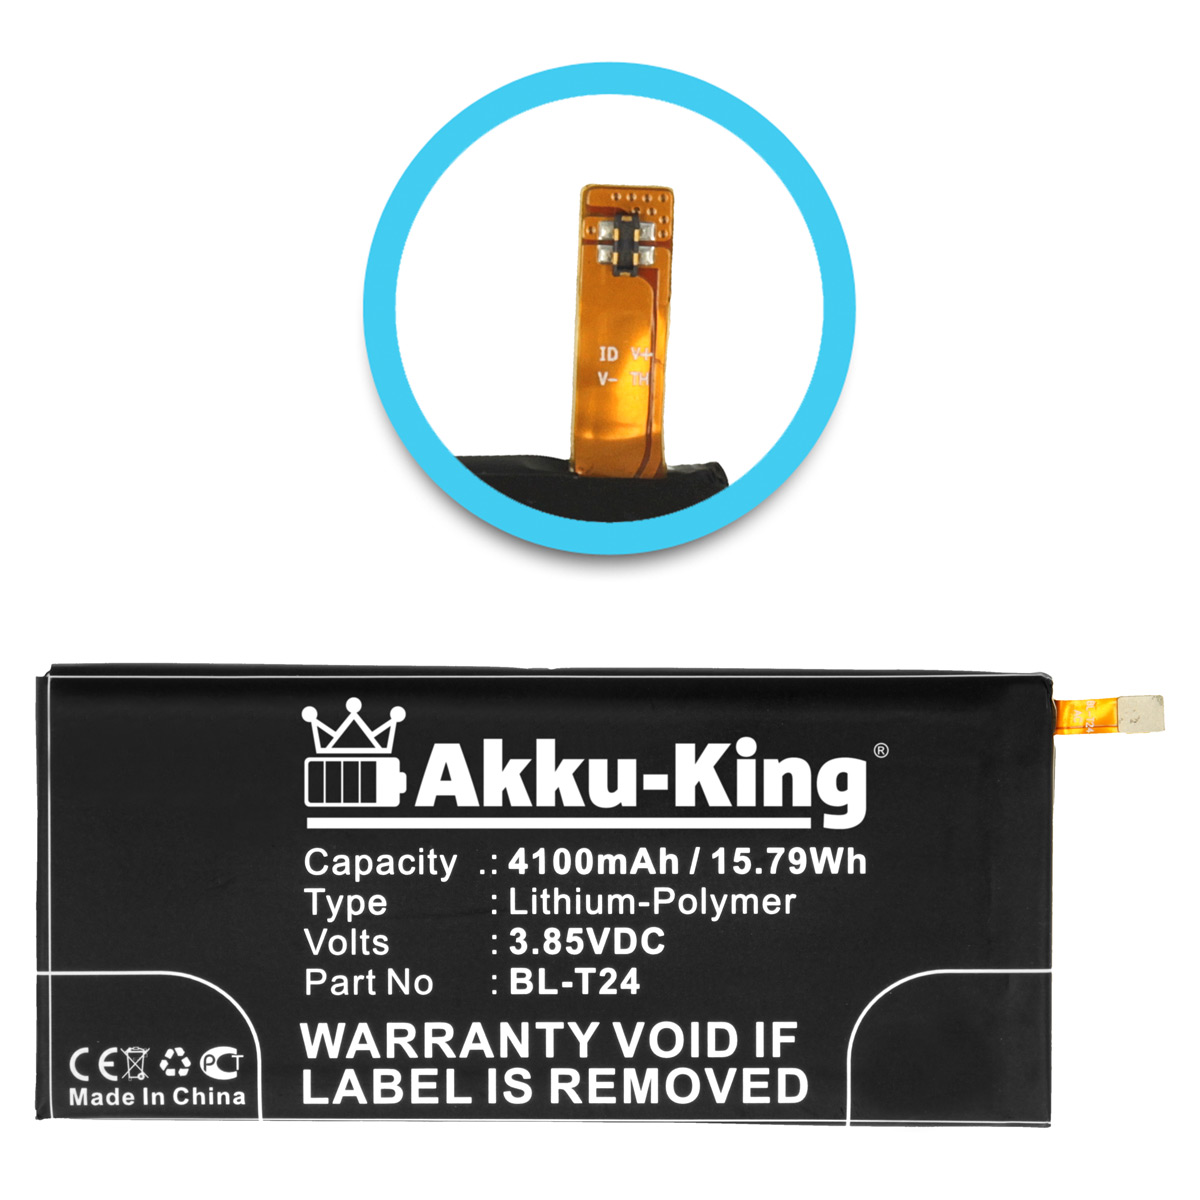 Akku 3.85 LG BL-T24 kompatibel 4100mAh Volt, AKKU-KING Li-Polymer mit Handy-Akku,